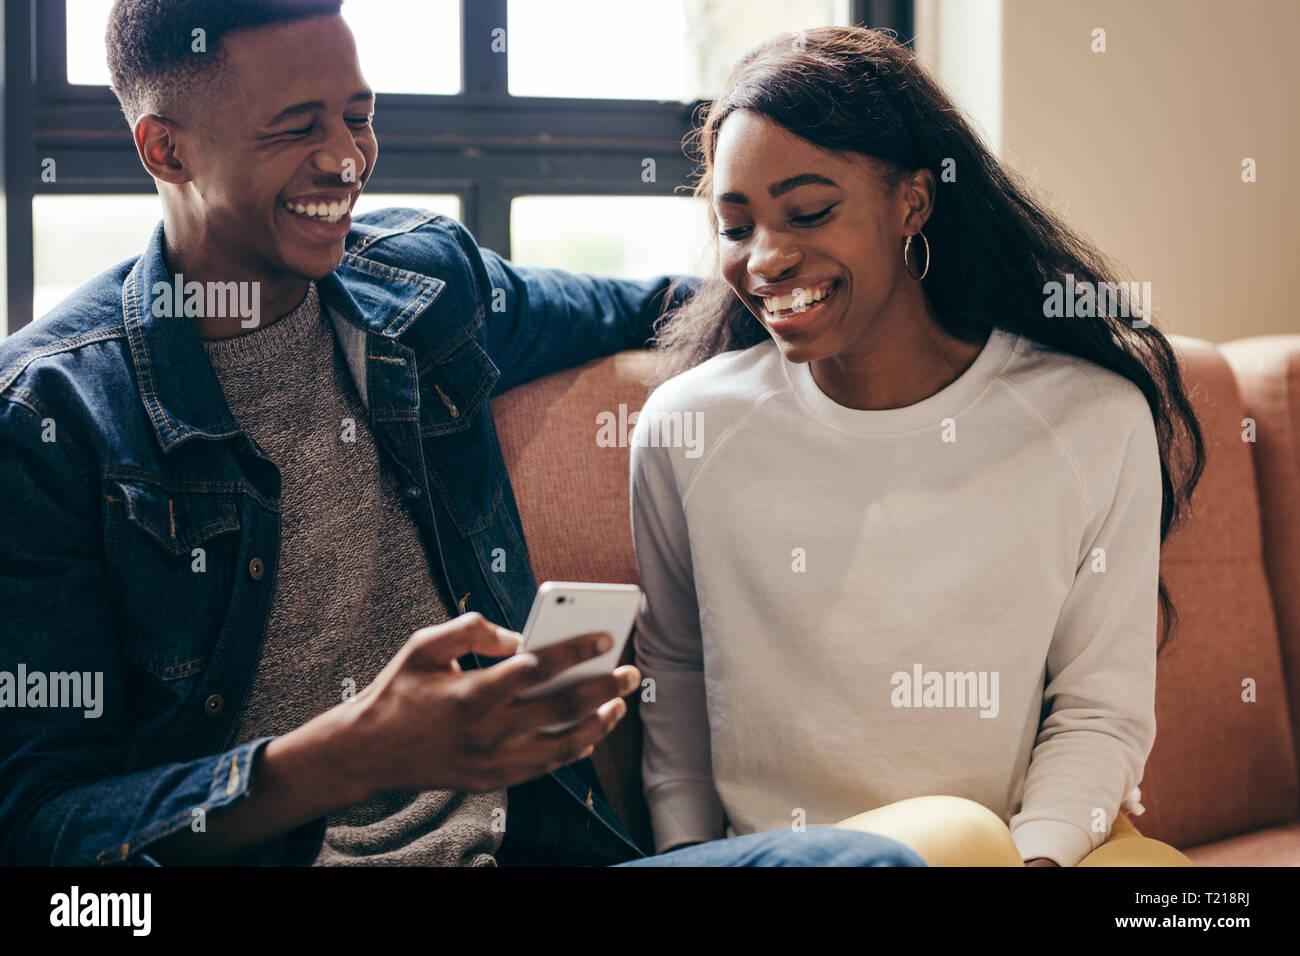 Deux étudiants américains africains using cell phone on campus. Heureux jeune homme et femme assise sur le canapé avec un téléphone intelligent. Banque D'Images